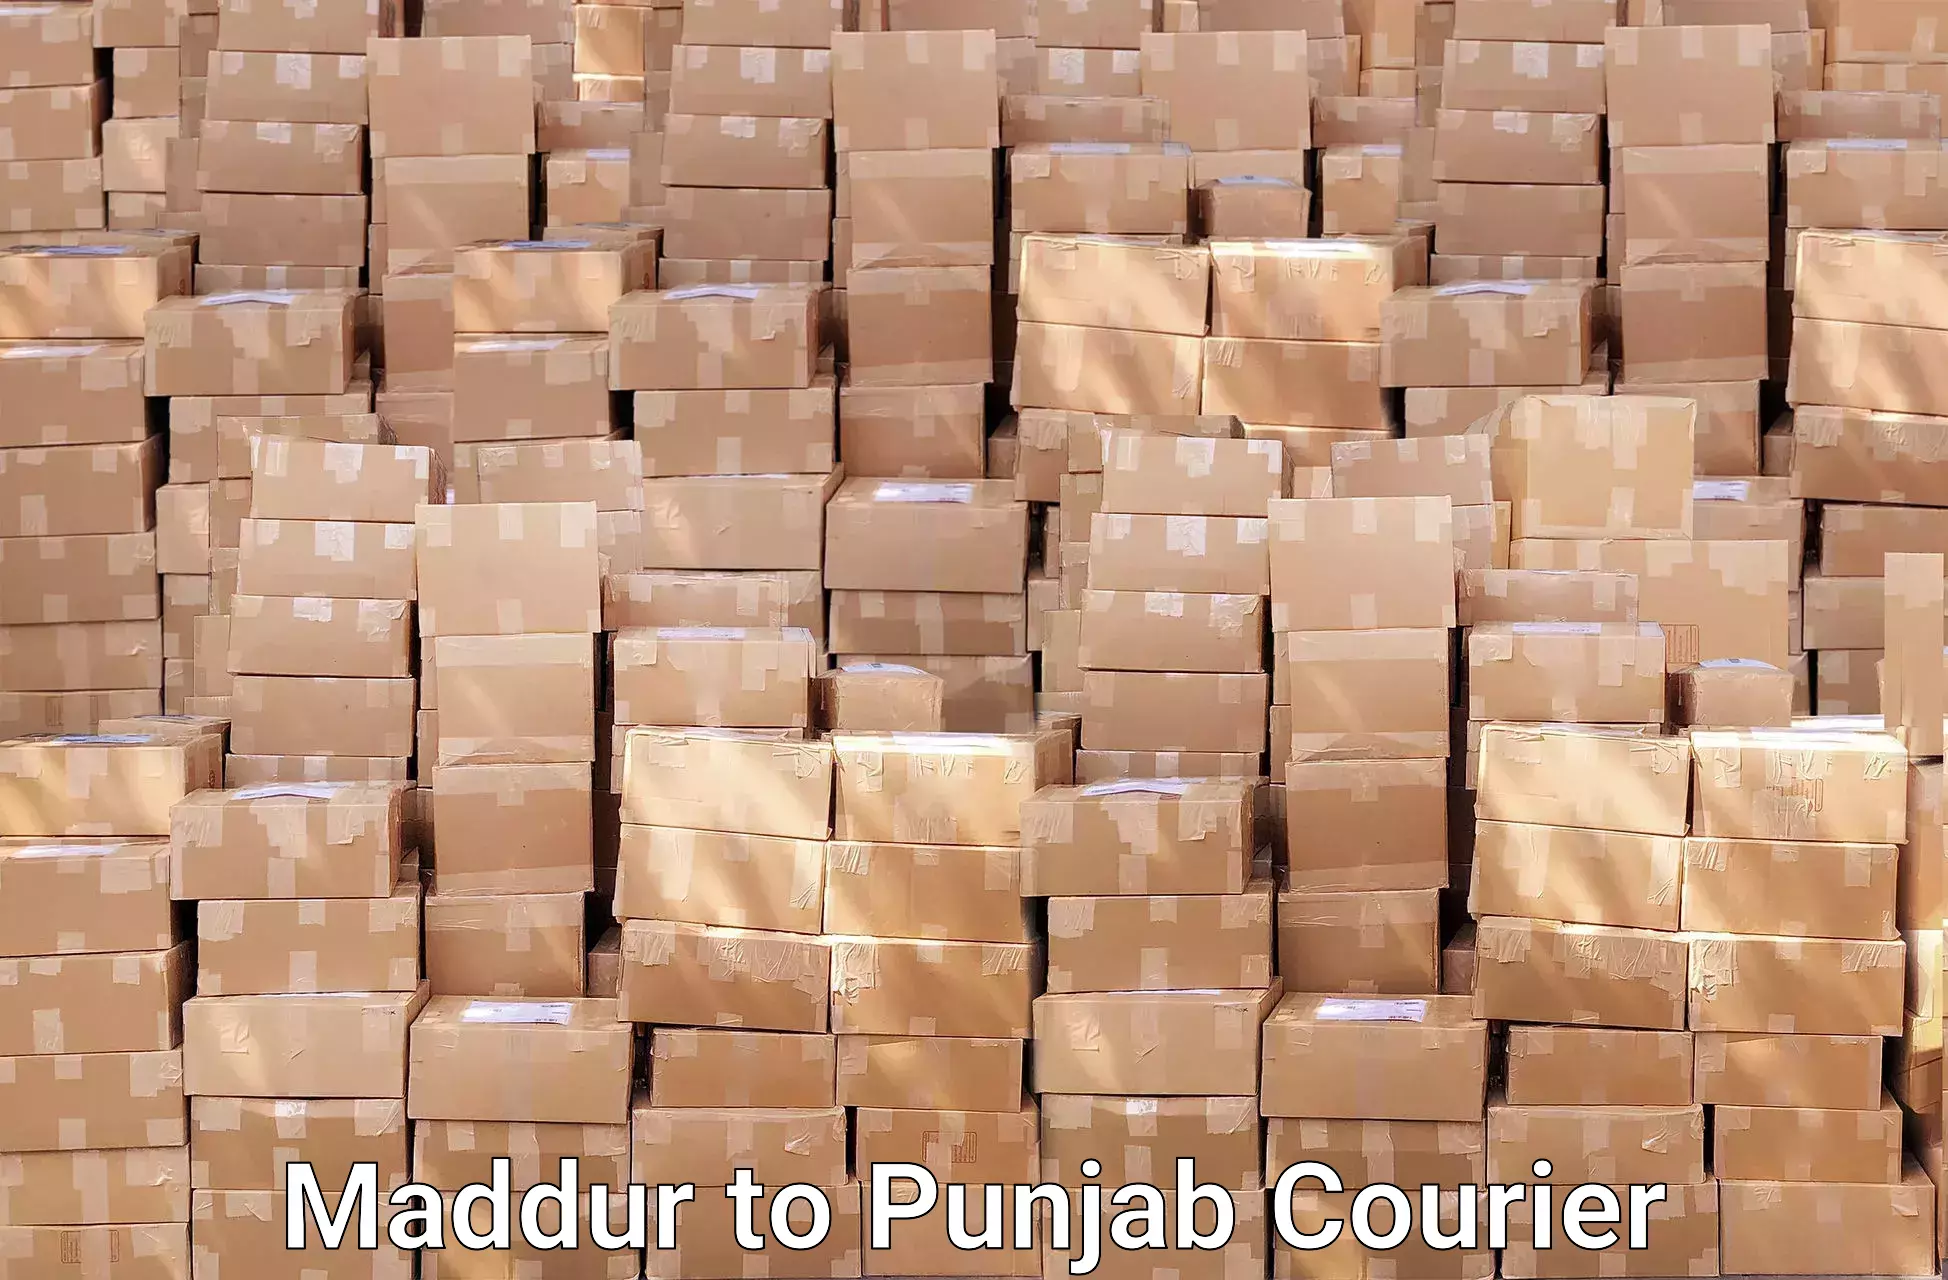 Furniture handling services Maddur to Punjab